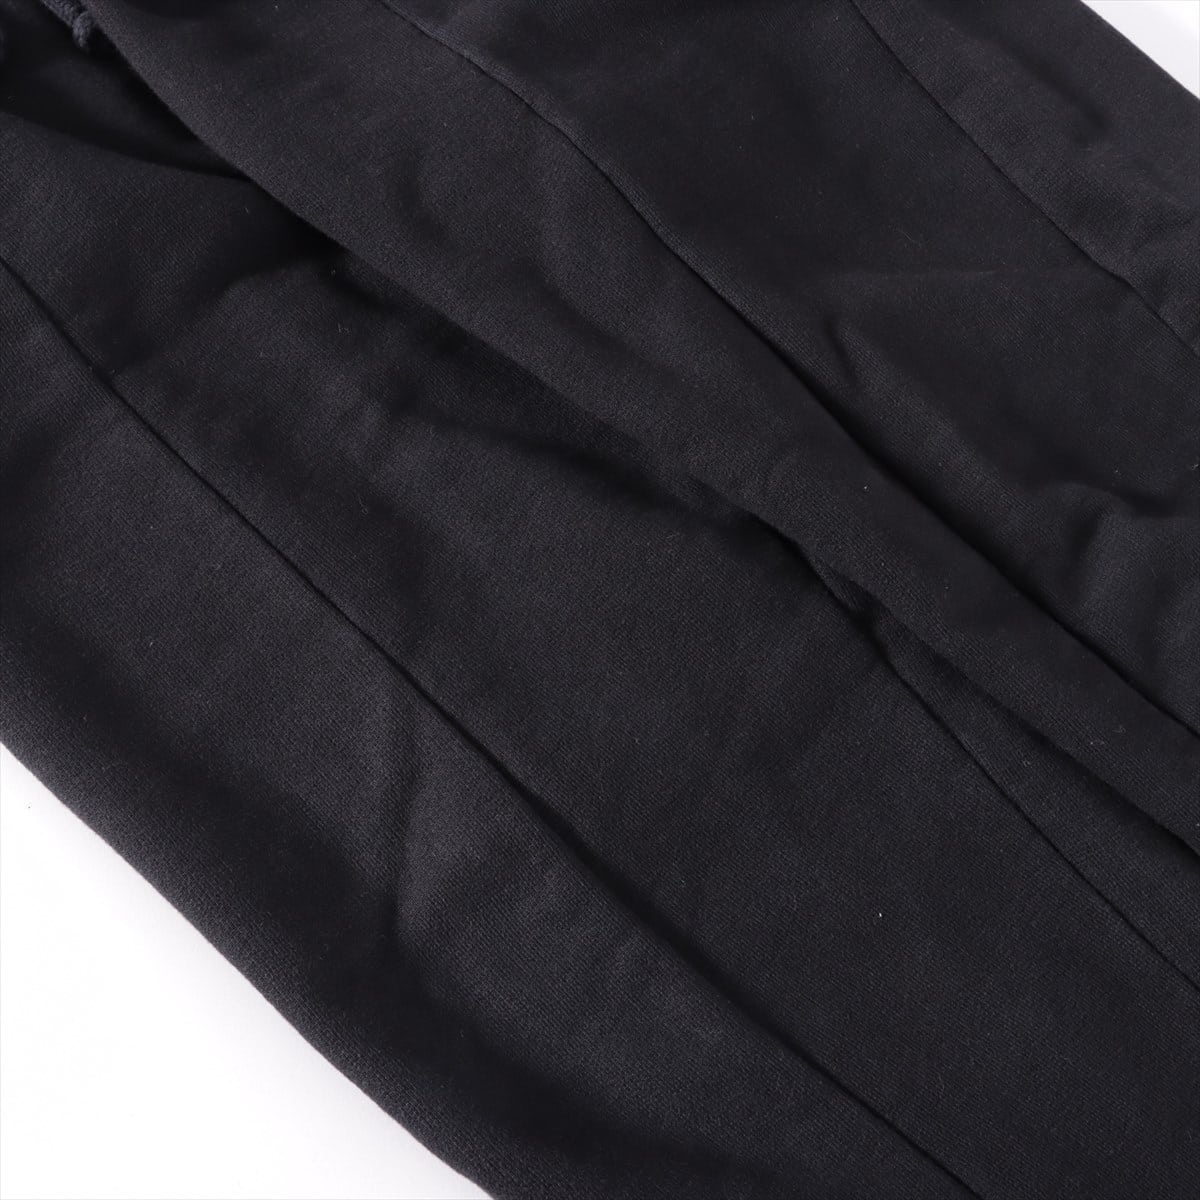 Vetements Cotton & polyester Sweatpants M Men's Black